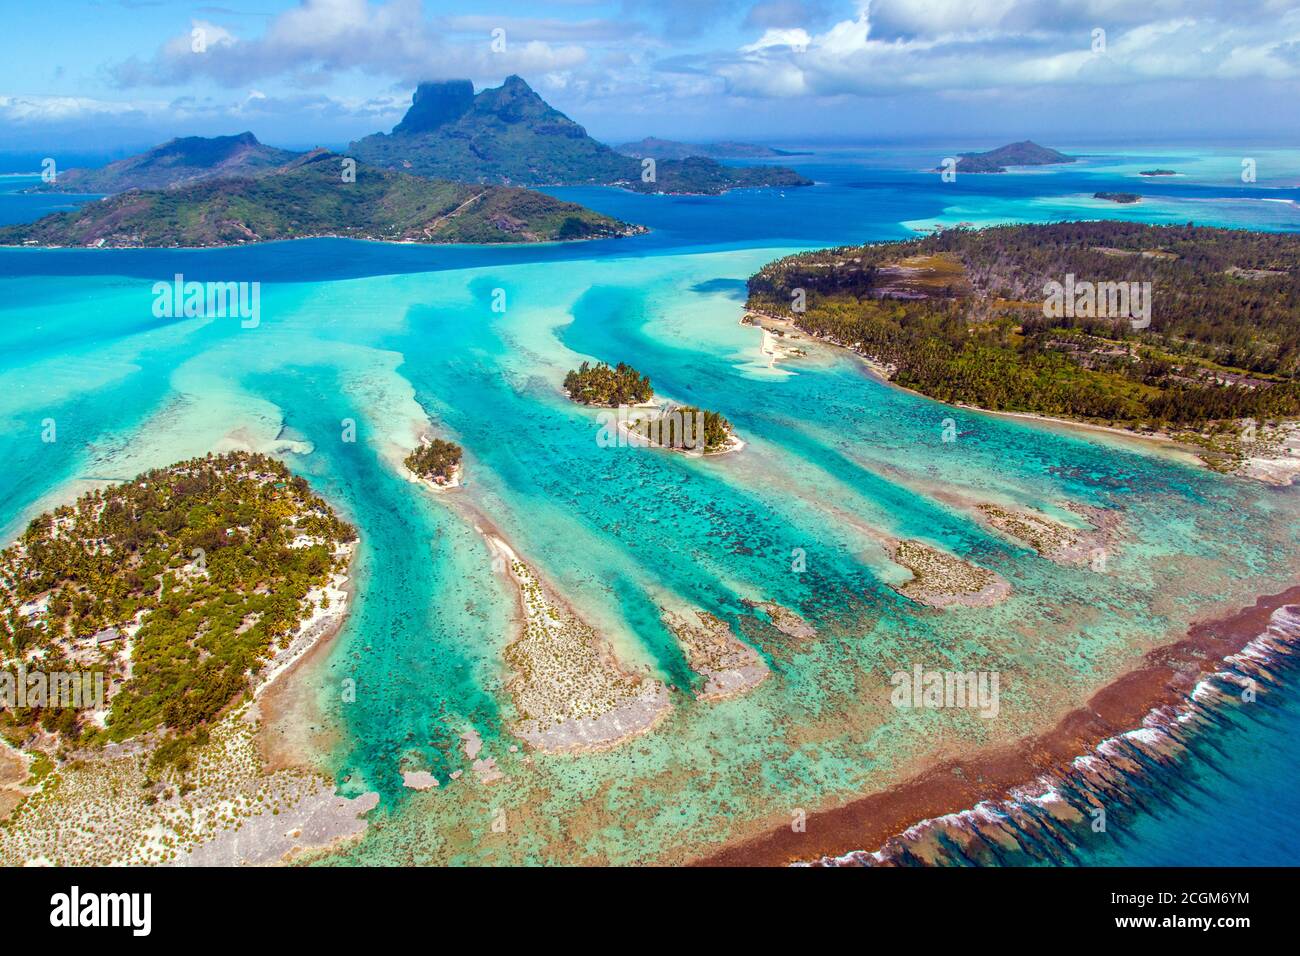 Prise de vue aérienne de Bora Bora, Polynésie française avec le mont Otemanu, le mont Pahia et les îles voisines de motus. Le paradis sur terre. Banque D'Images